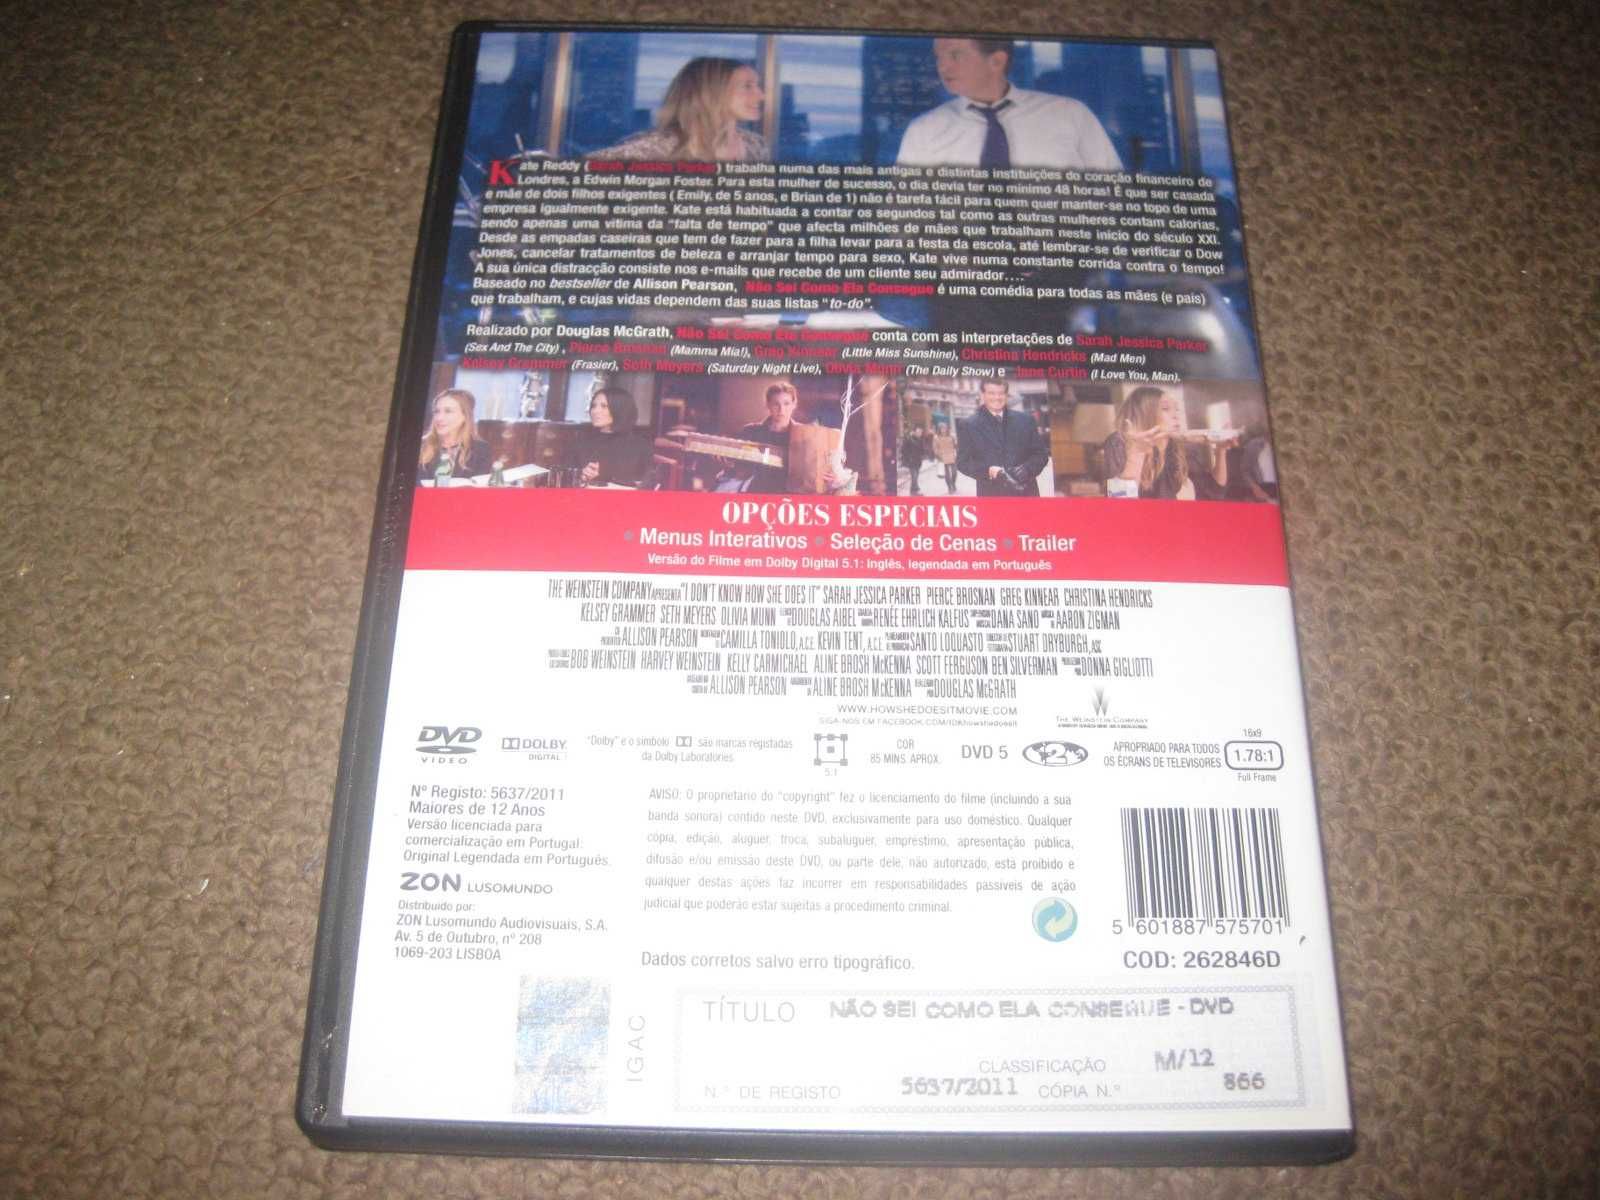 DVD "Não Sei Como Ela Consegue" com Sarah Jessica Parker